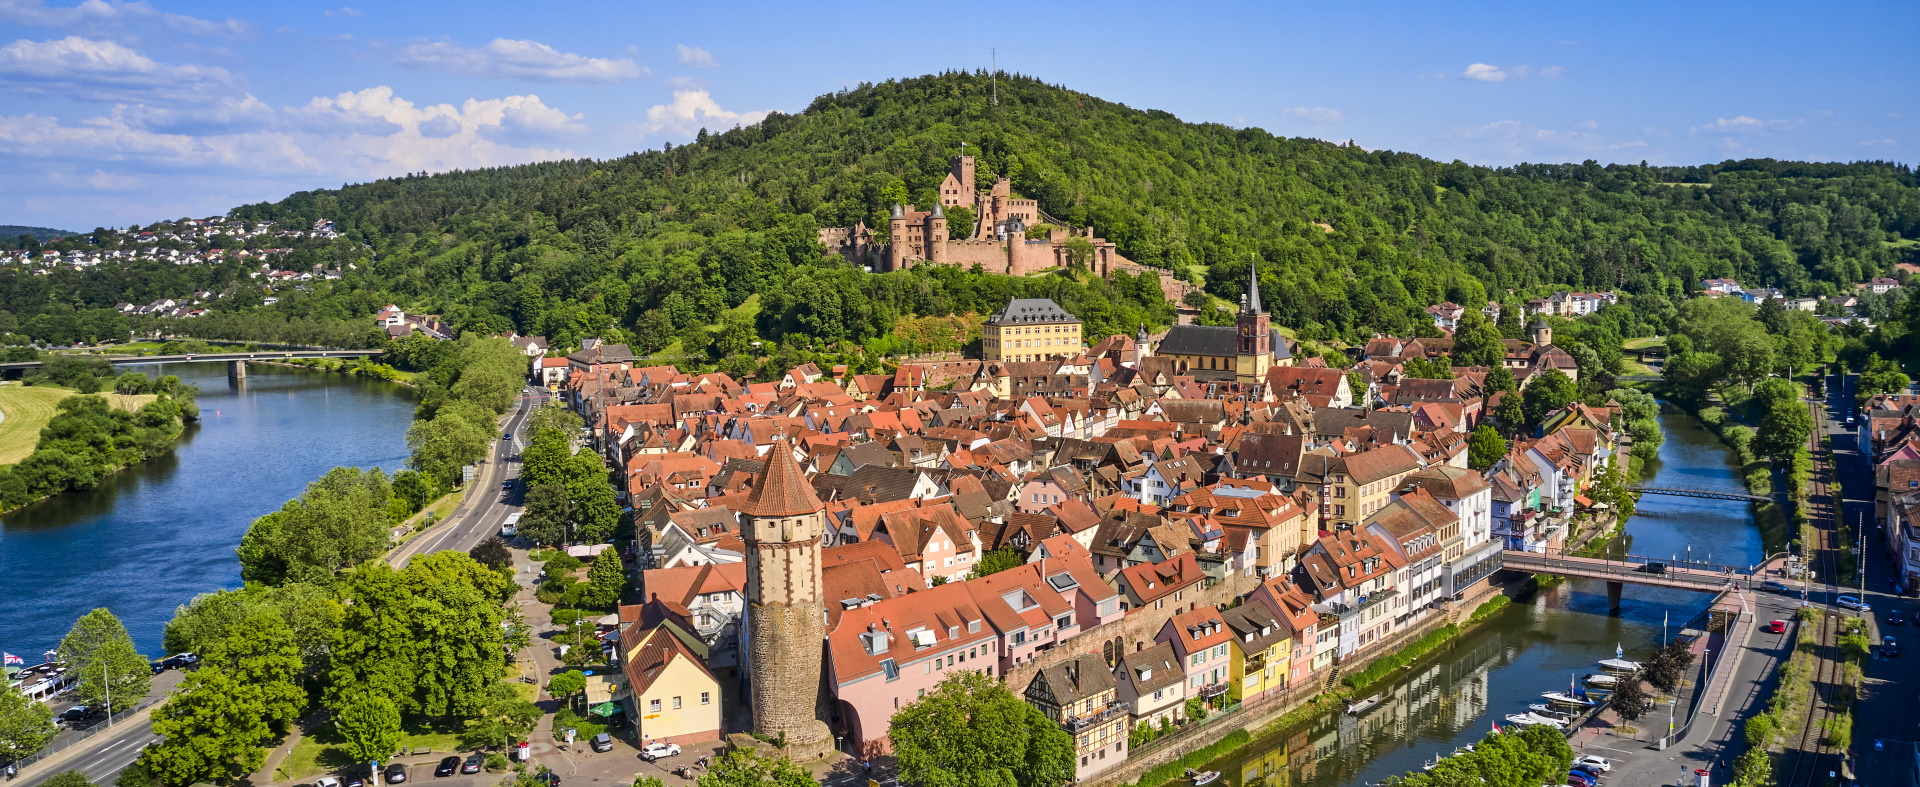 Luftaufnahme der Stadt Wertheim mit dem Zusammenfluss von Tauber und Main. Auf dem Berg thront die Wertheimer Burg.